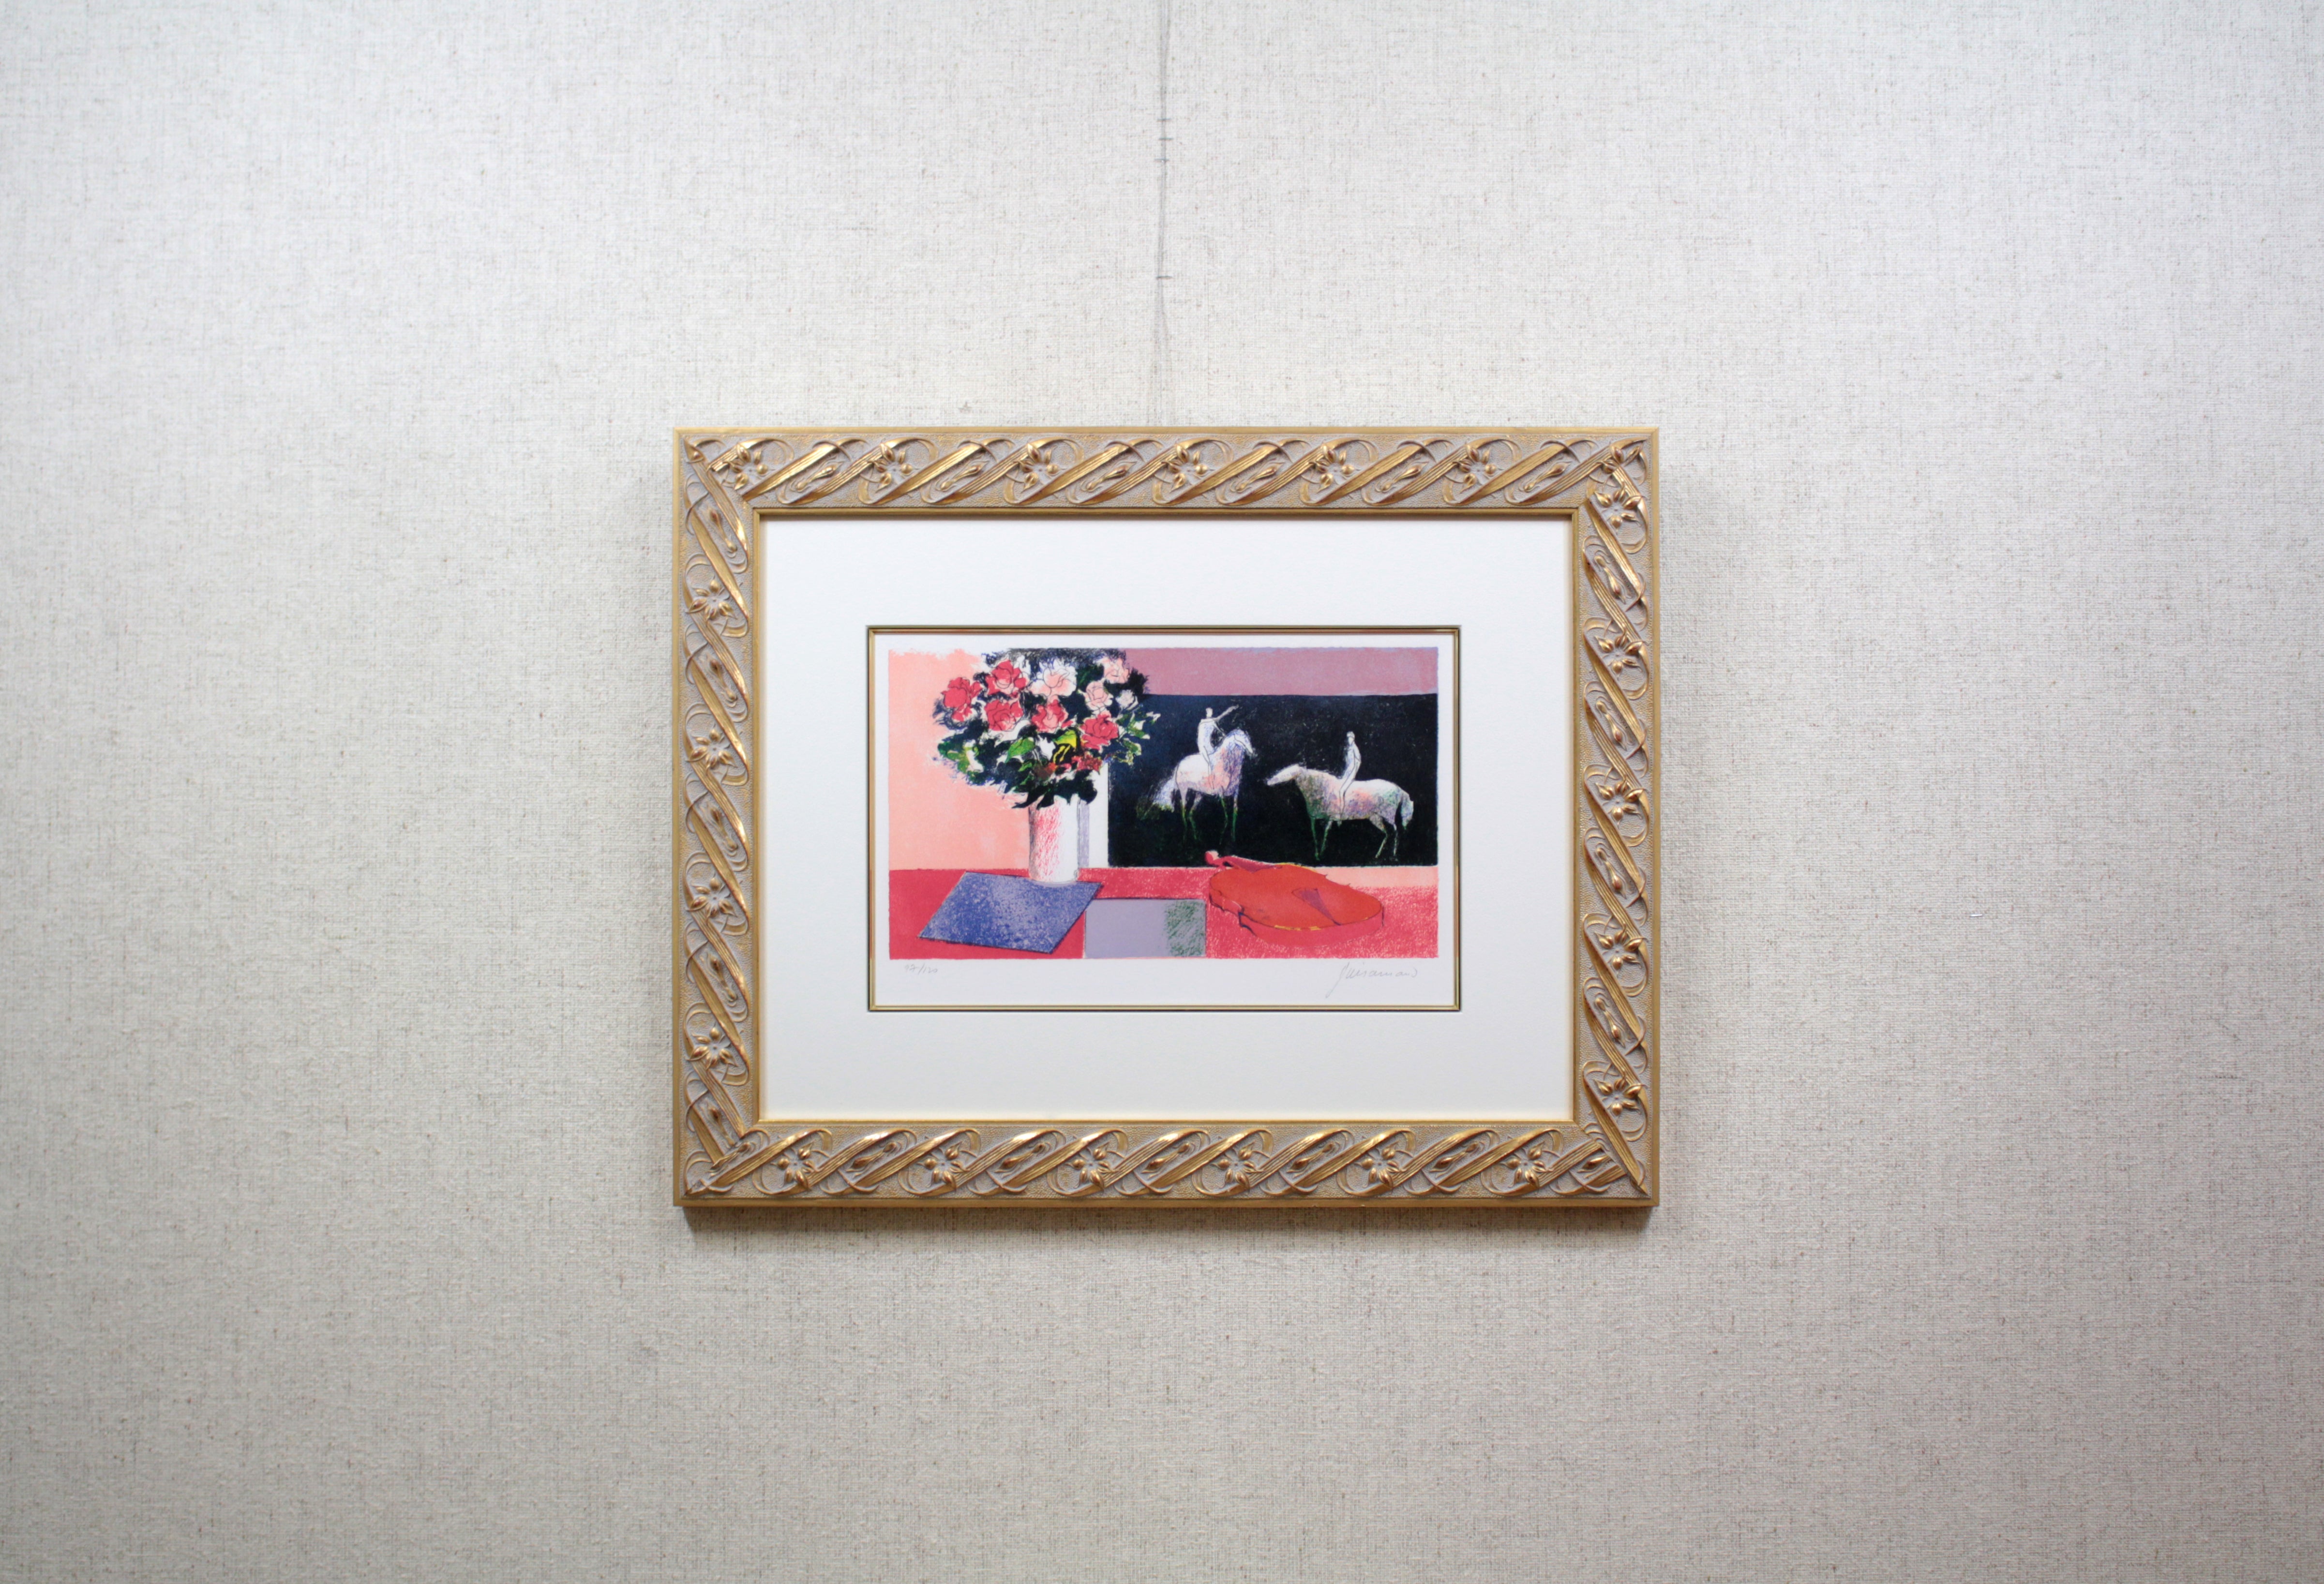 ポール・ギヤマン 『花と馬とバイオリン』 リトグラフ - 北海道画廊